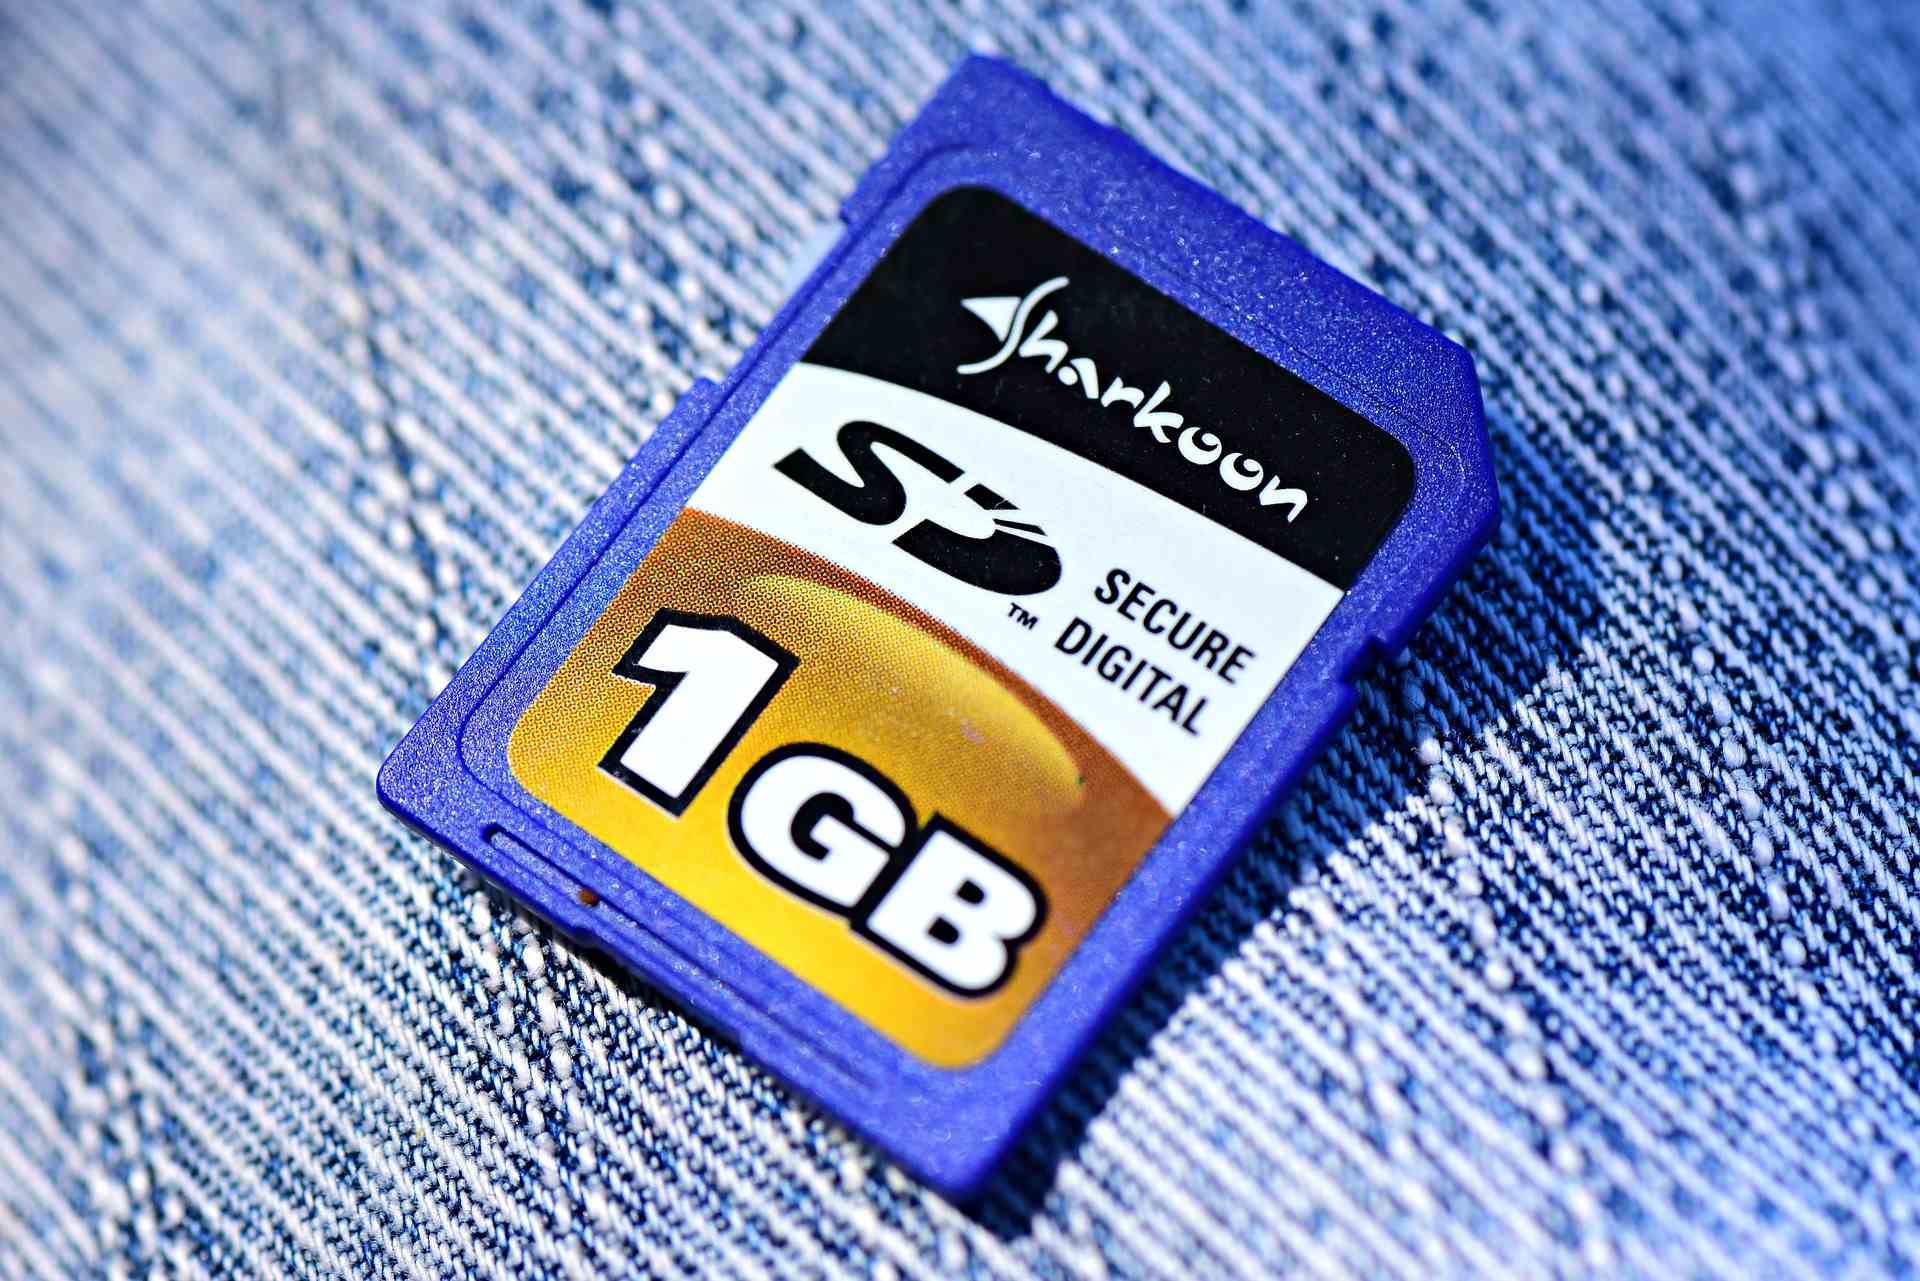 Eine 1 GB SD Speicherkarte